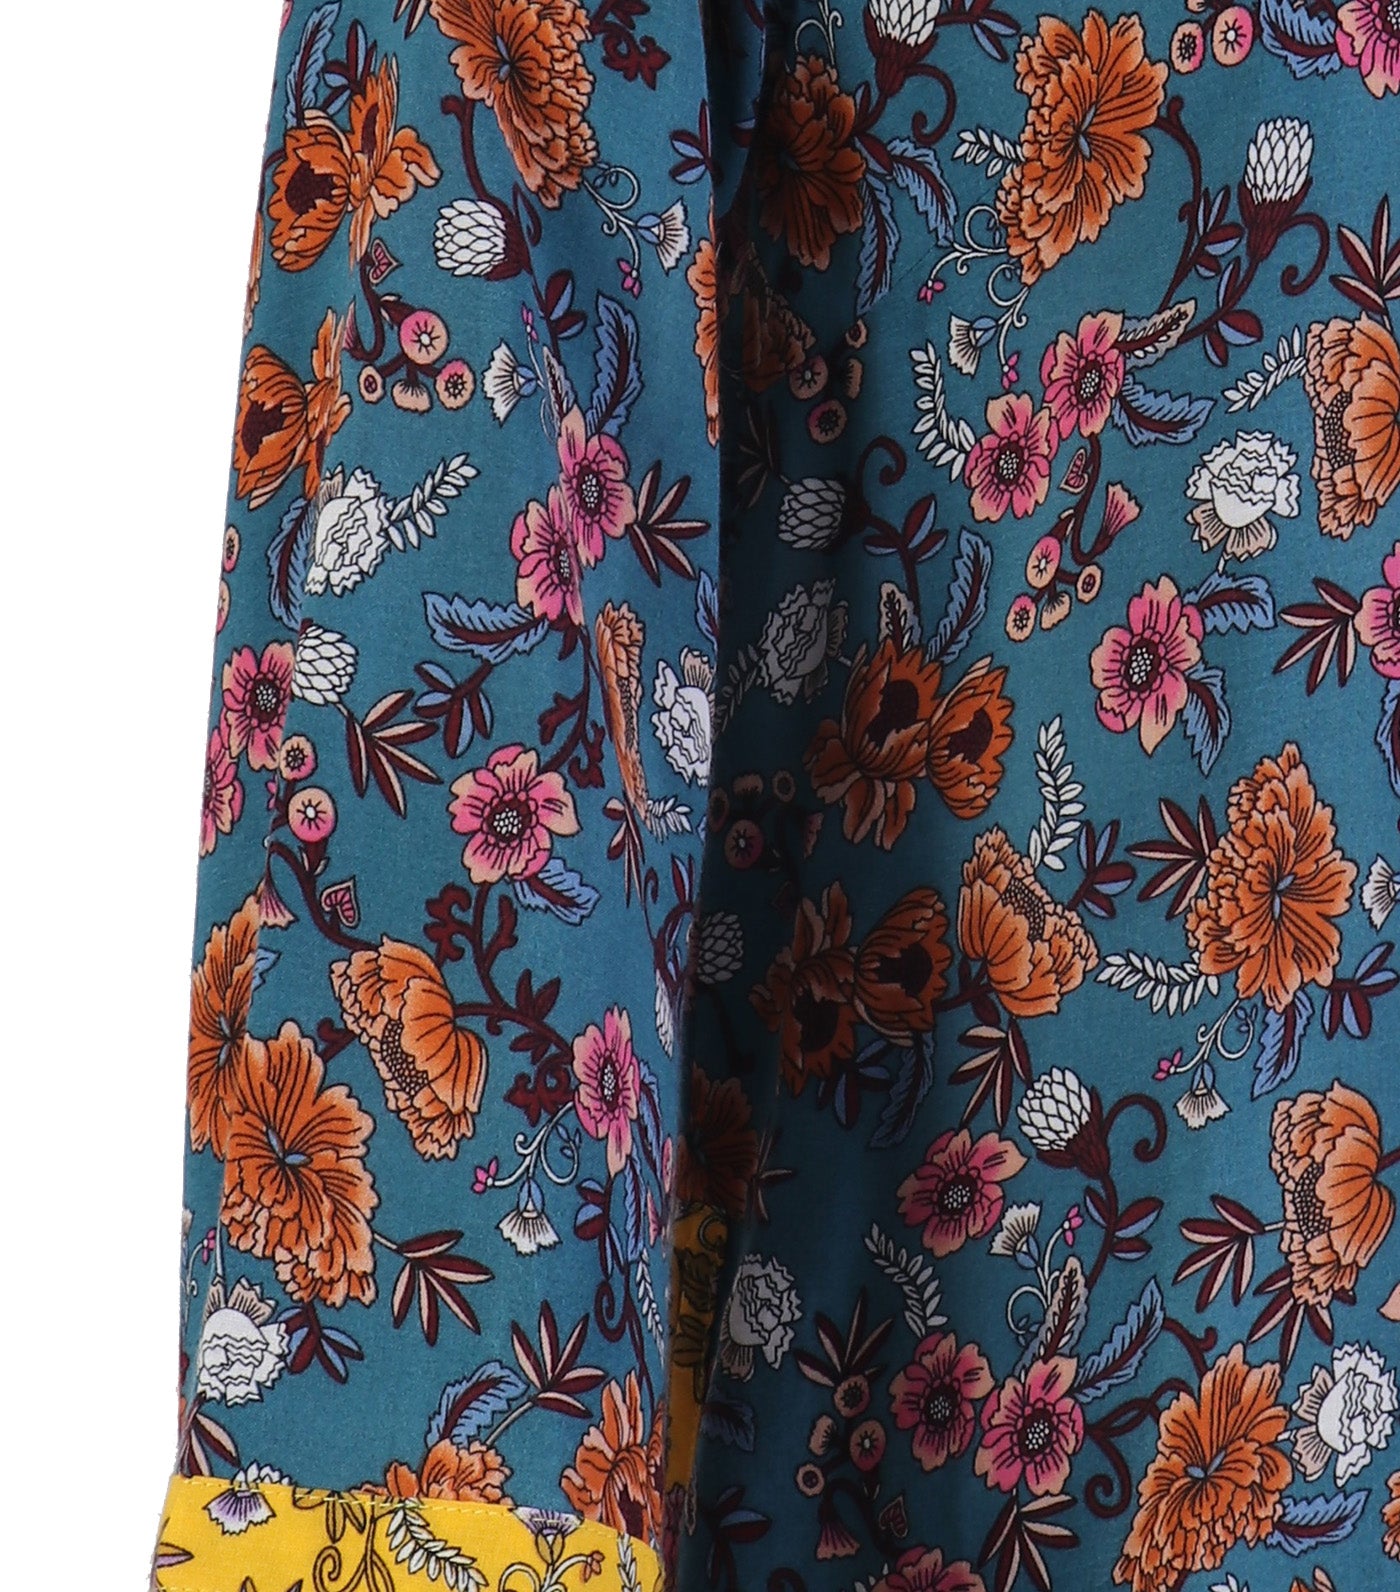 Lotus Resortwear Jo Long Sleeves Multicolor Print Top Blue